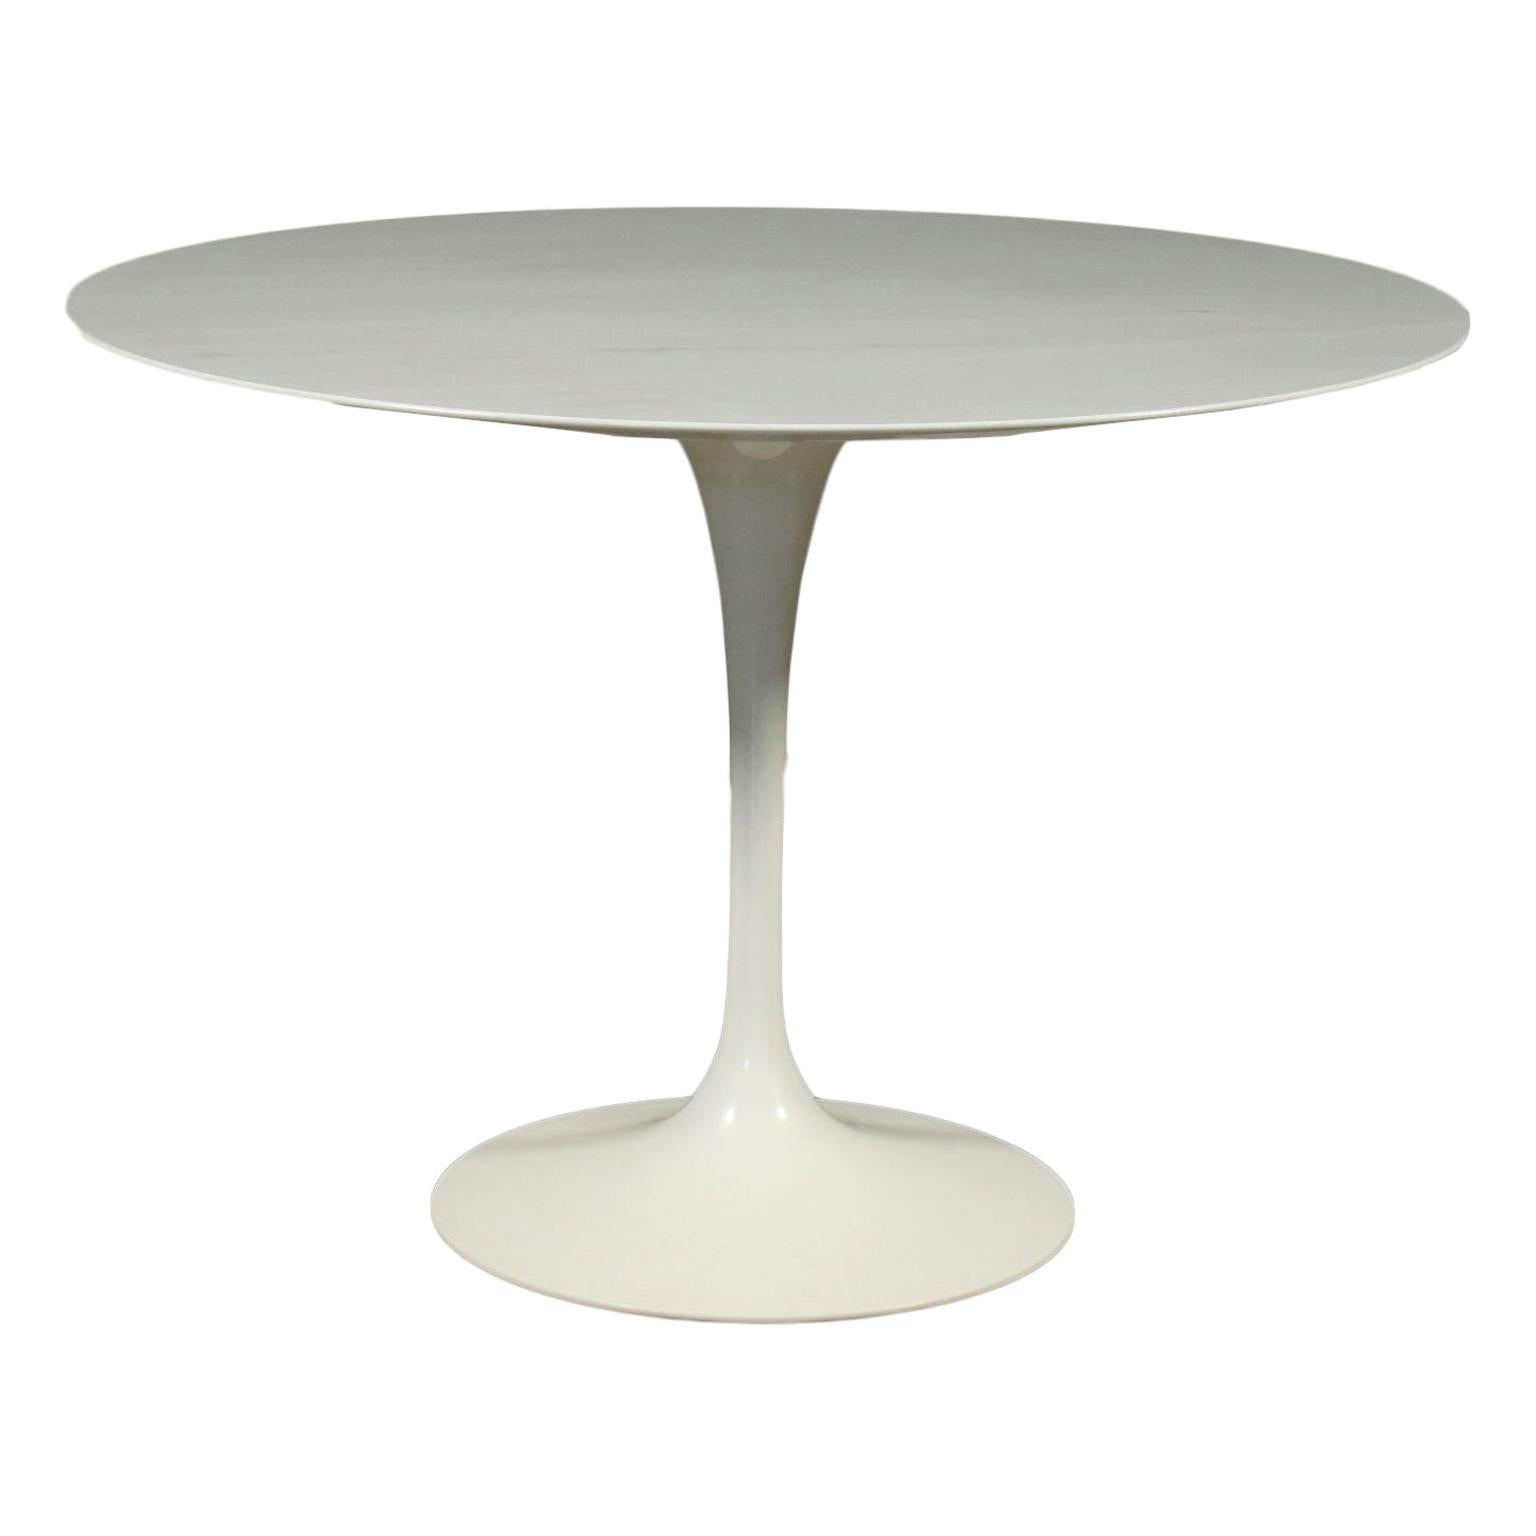 Eero Saarinen Table Lacquered Aluminium Marble 1980s 1990s